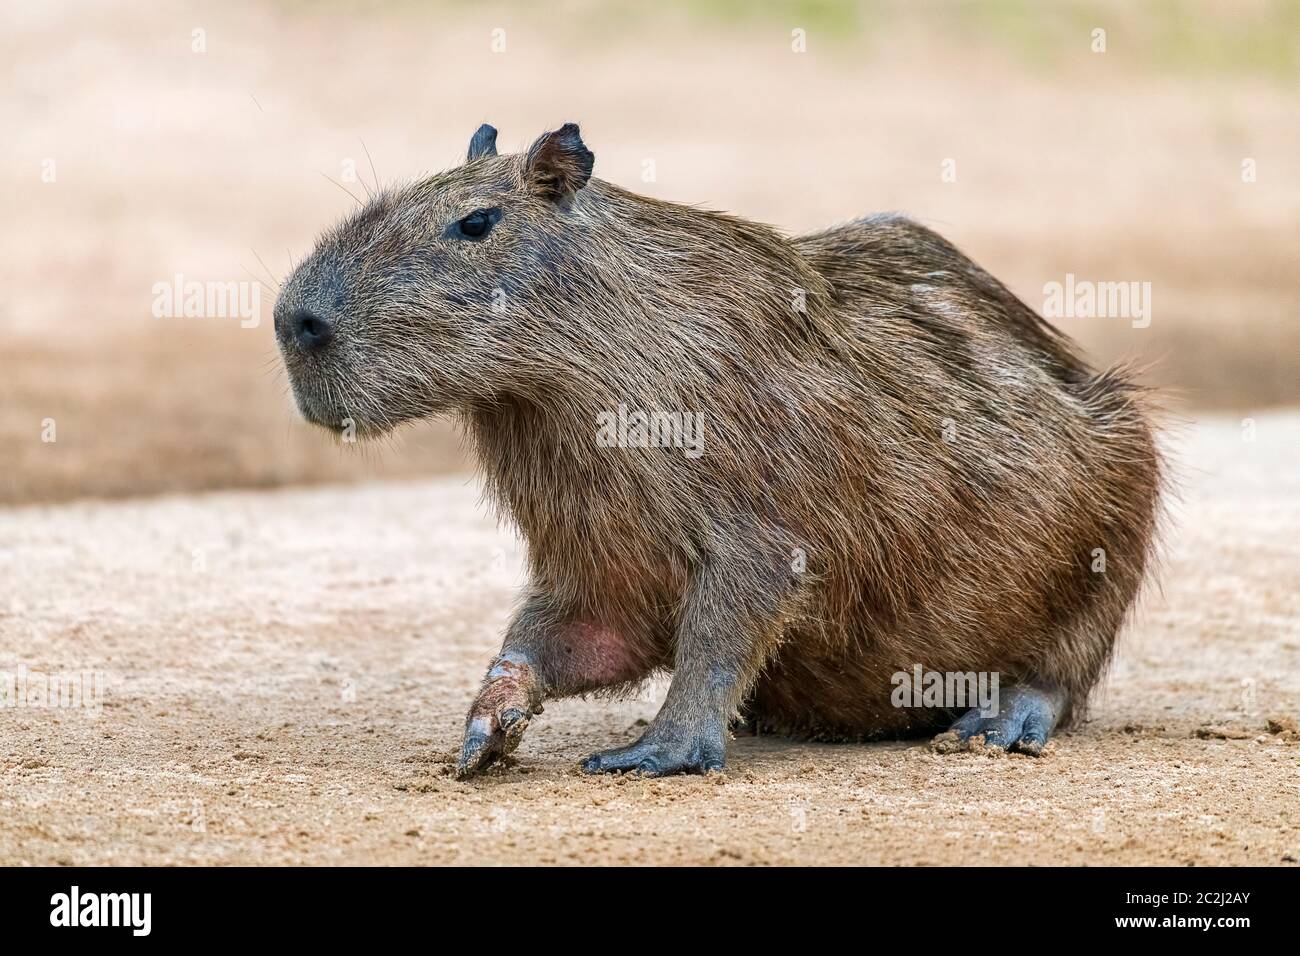 Capybara oder Wasserschwein (Hydrochoerus hydrochaeris) aufmerksam auf Sandbank, Pantanal, Mato Grosso, Brasilien Stock Photo